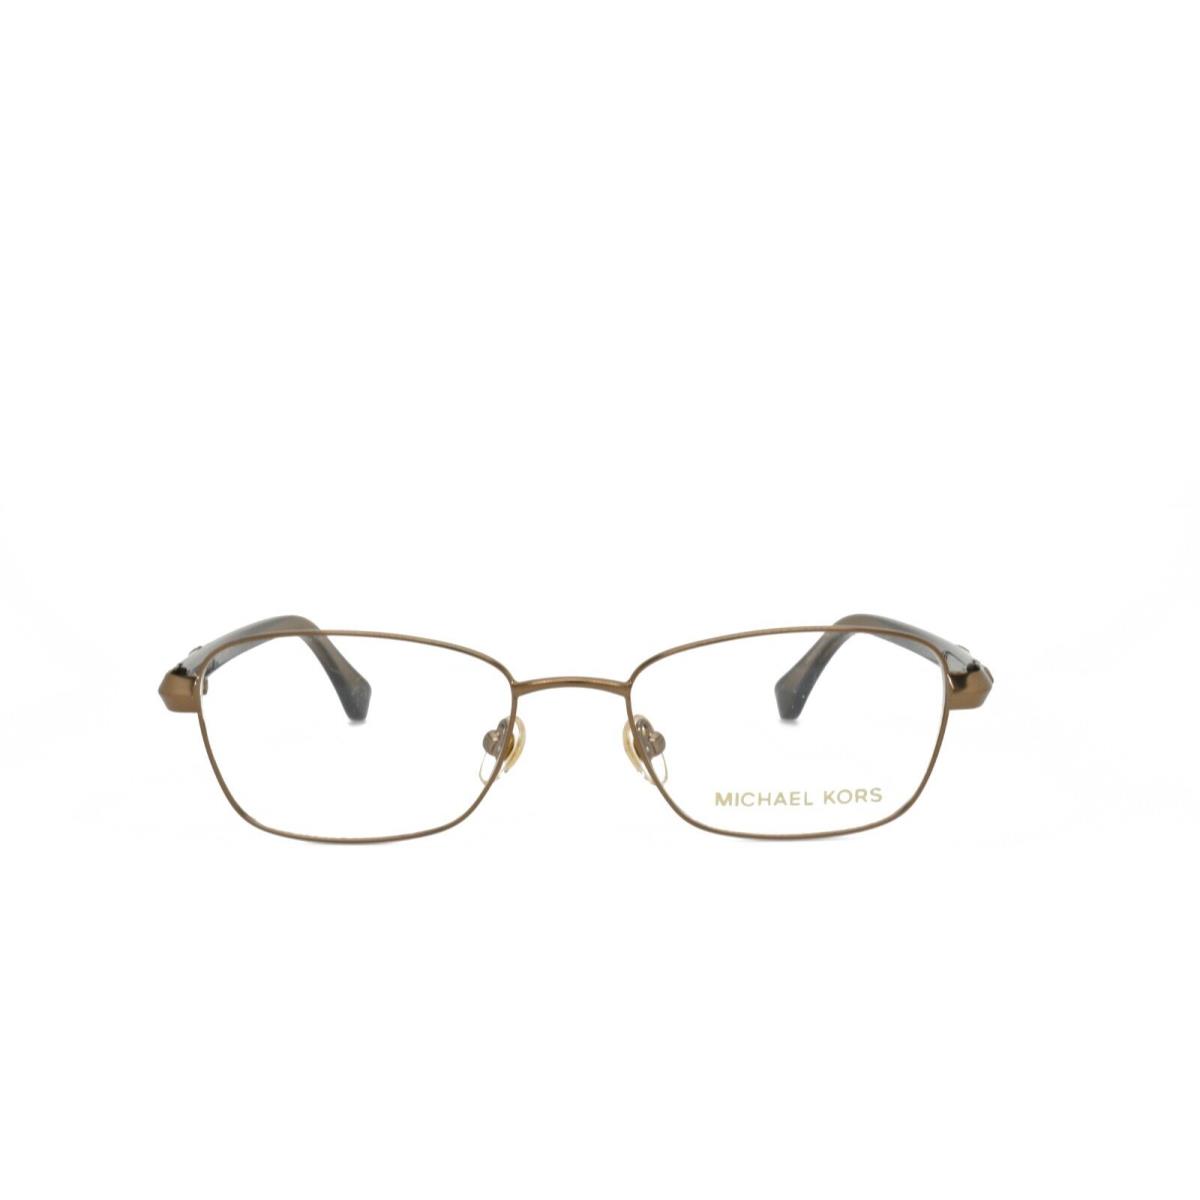 Michael Kors 357 239 49-17-135 Brown Tortoise Eyeglasses Frames